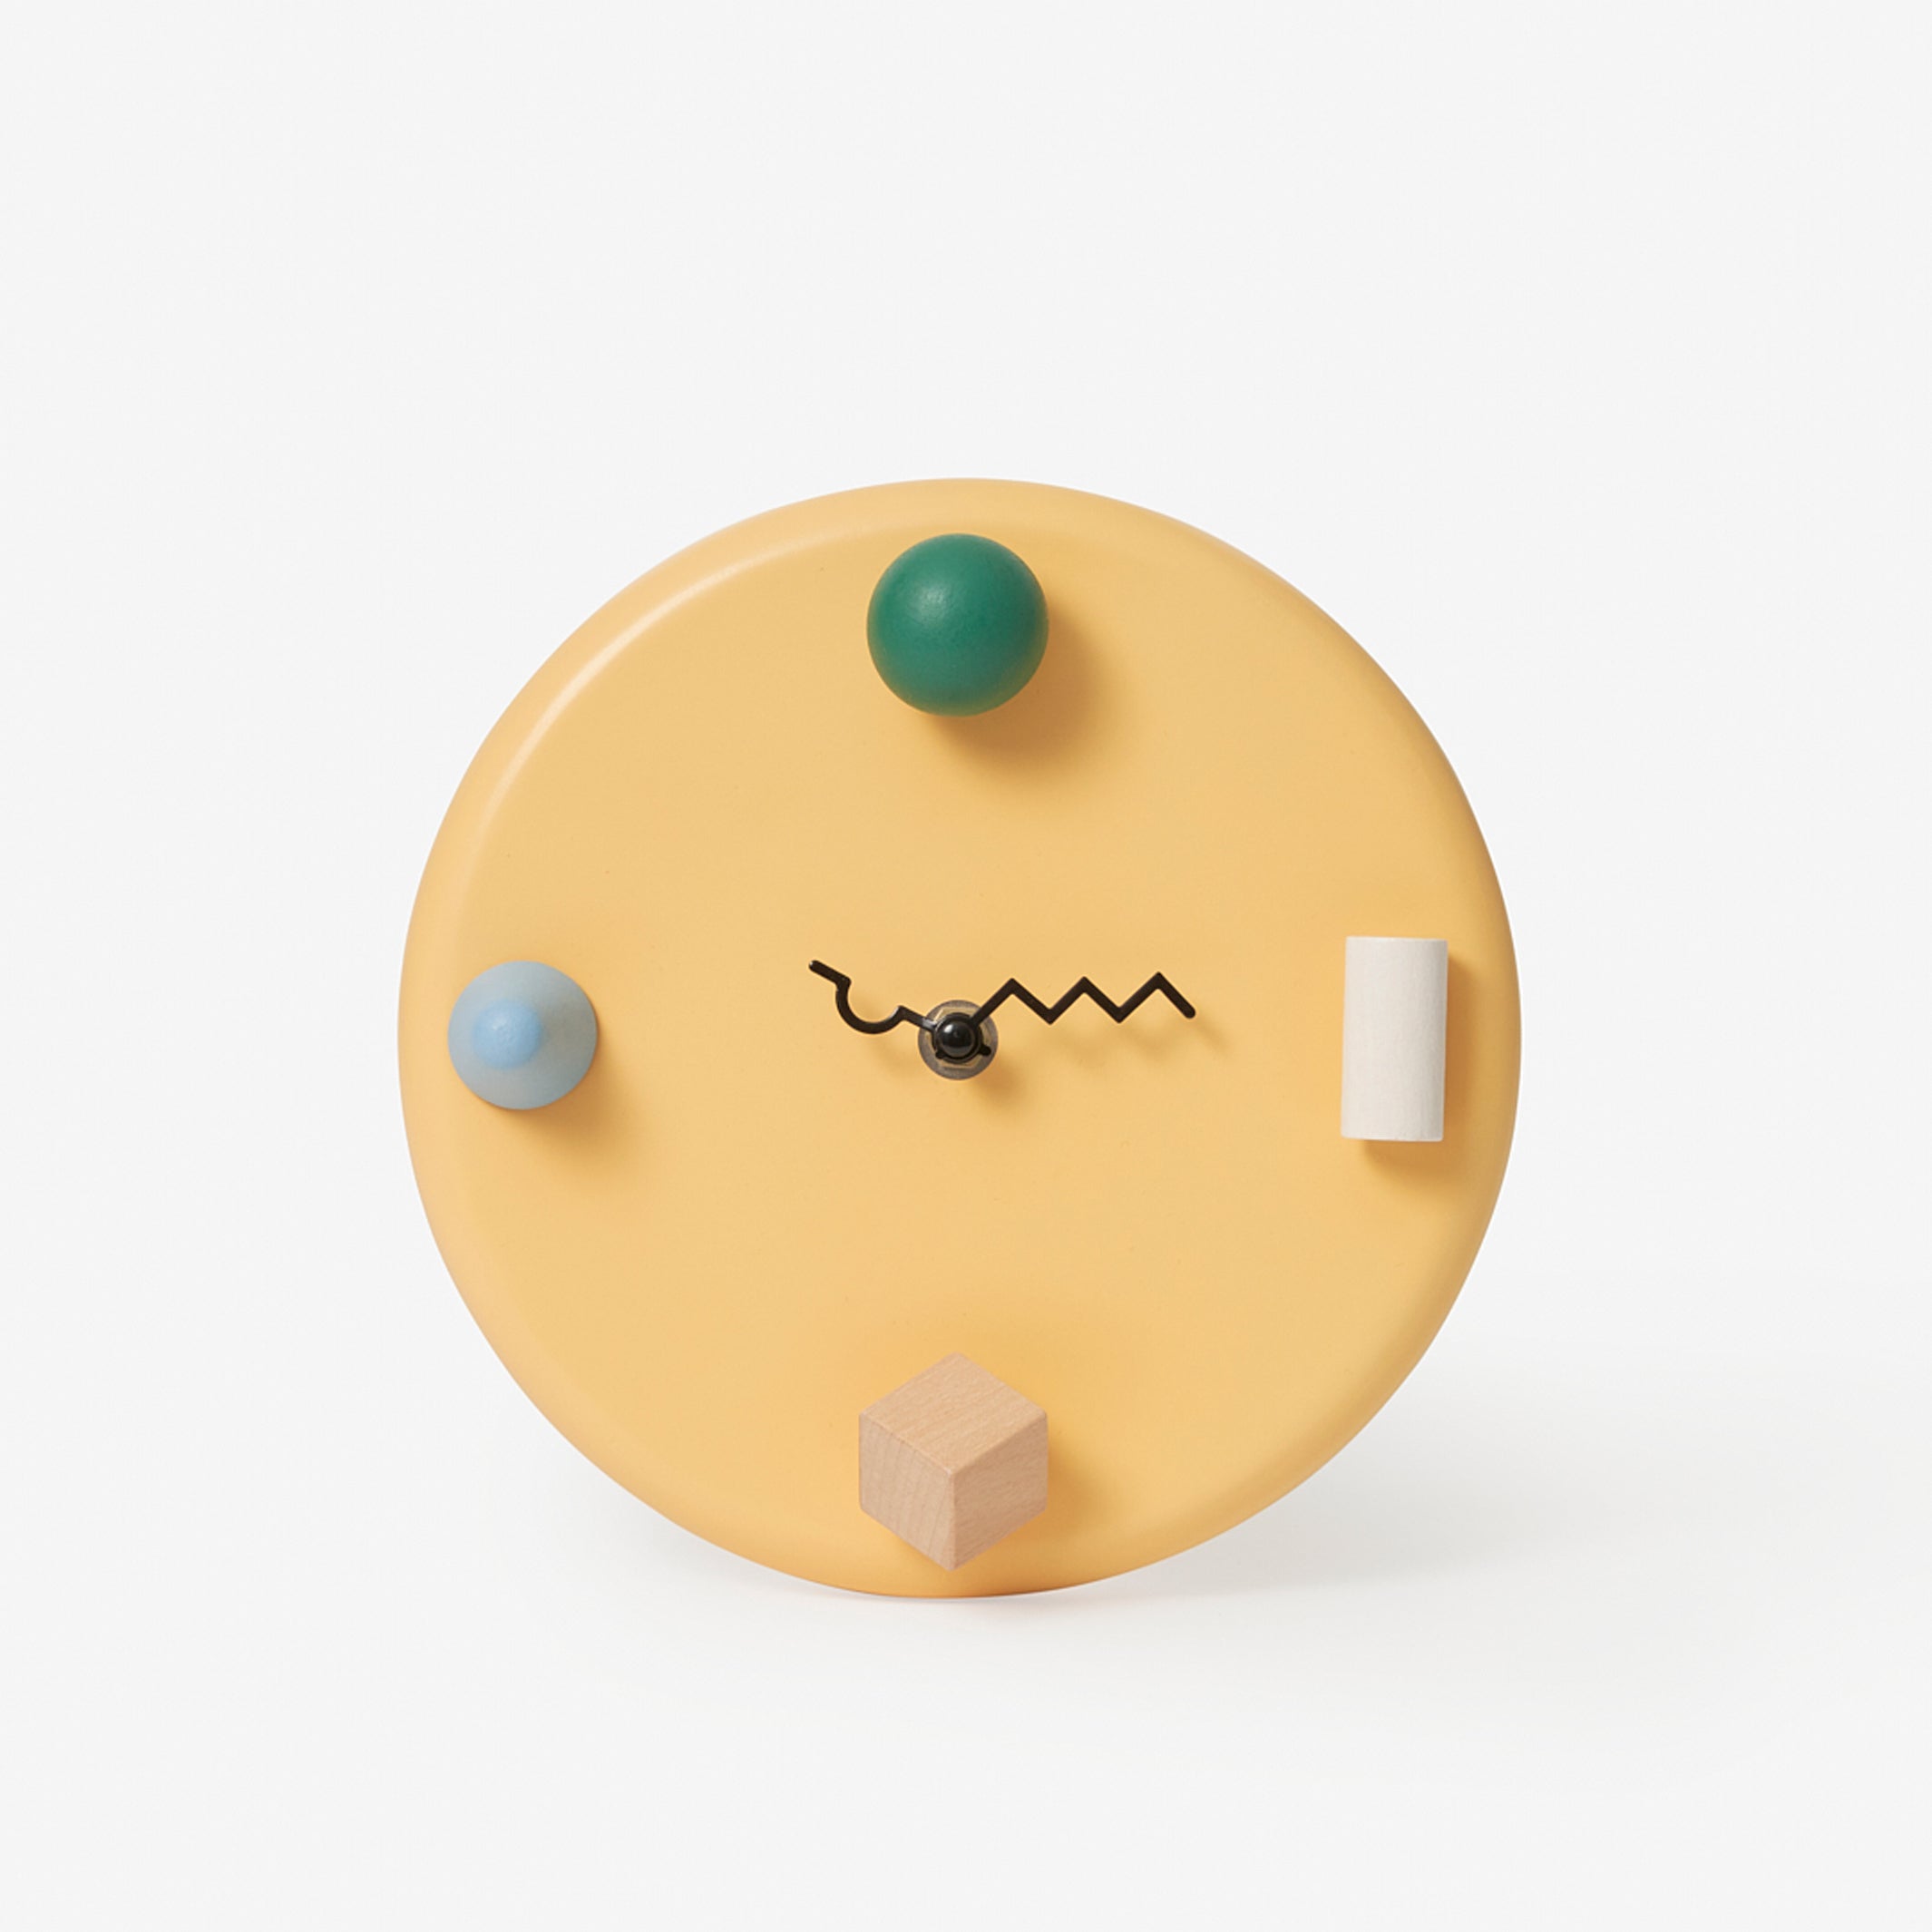 WALL CLOCKS | farbige WANDUHREN | dreidimensional & abstrakt D=20 cm | Pat Kim | Areaware